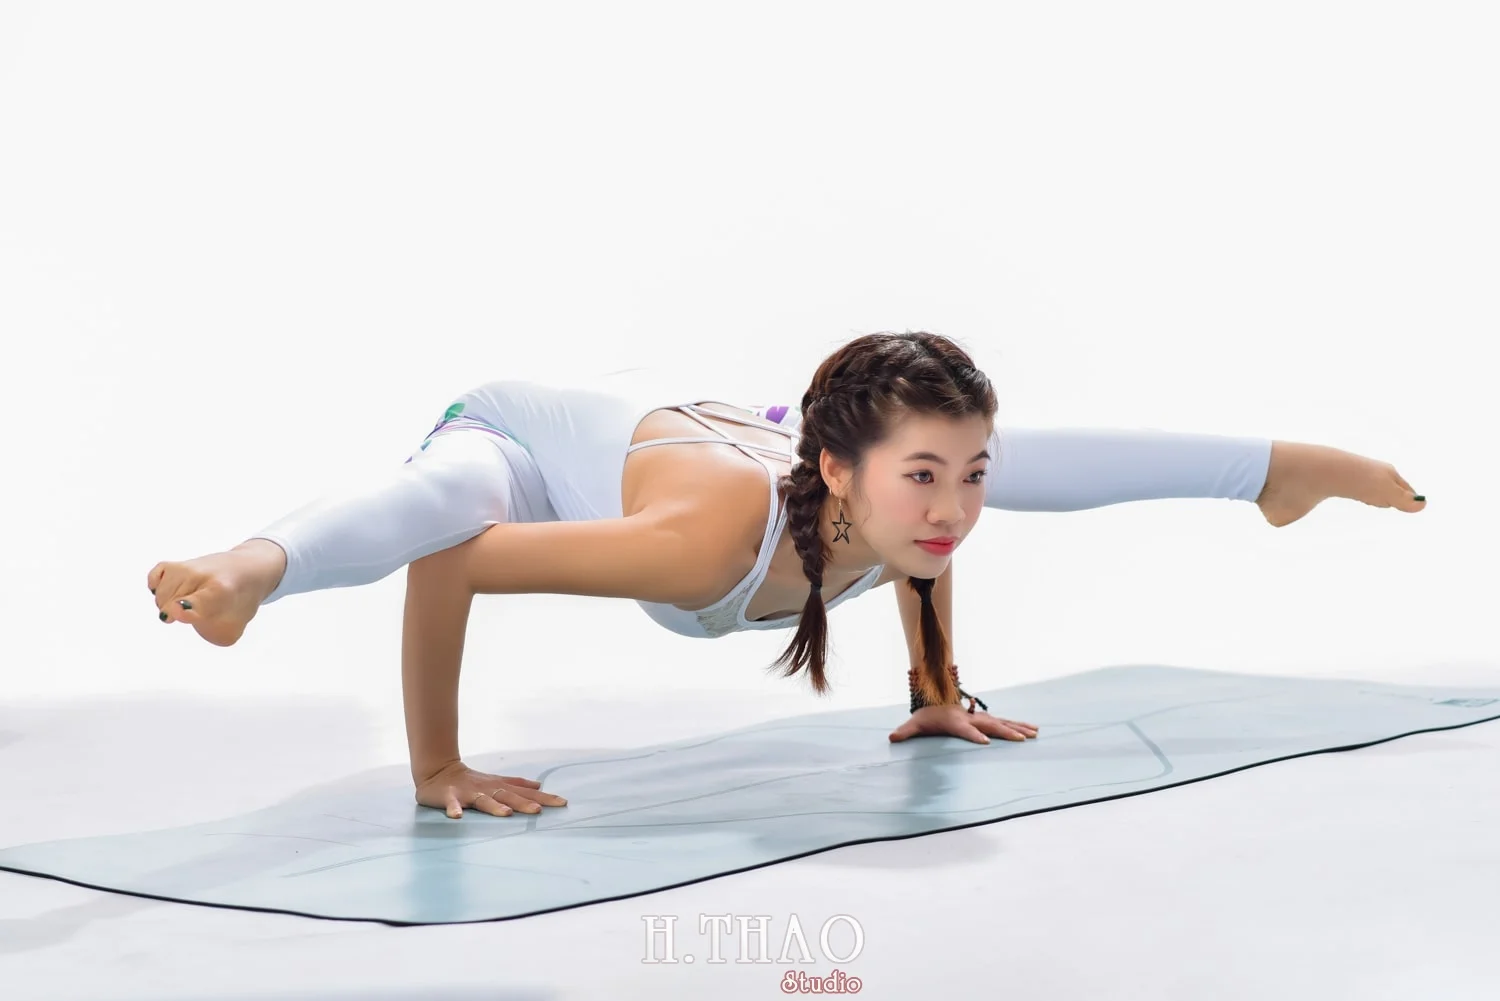 Anh yoga 4 min - Bộ ảnh Yoga chụp trong studio tuyệt đẹp – HThao Studio